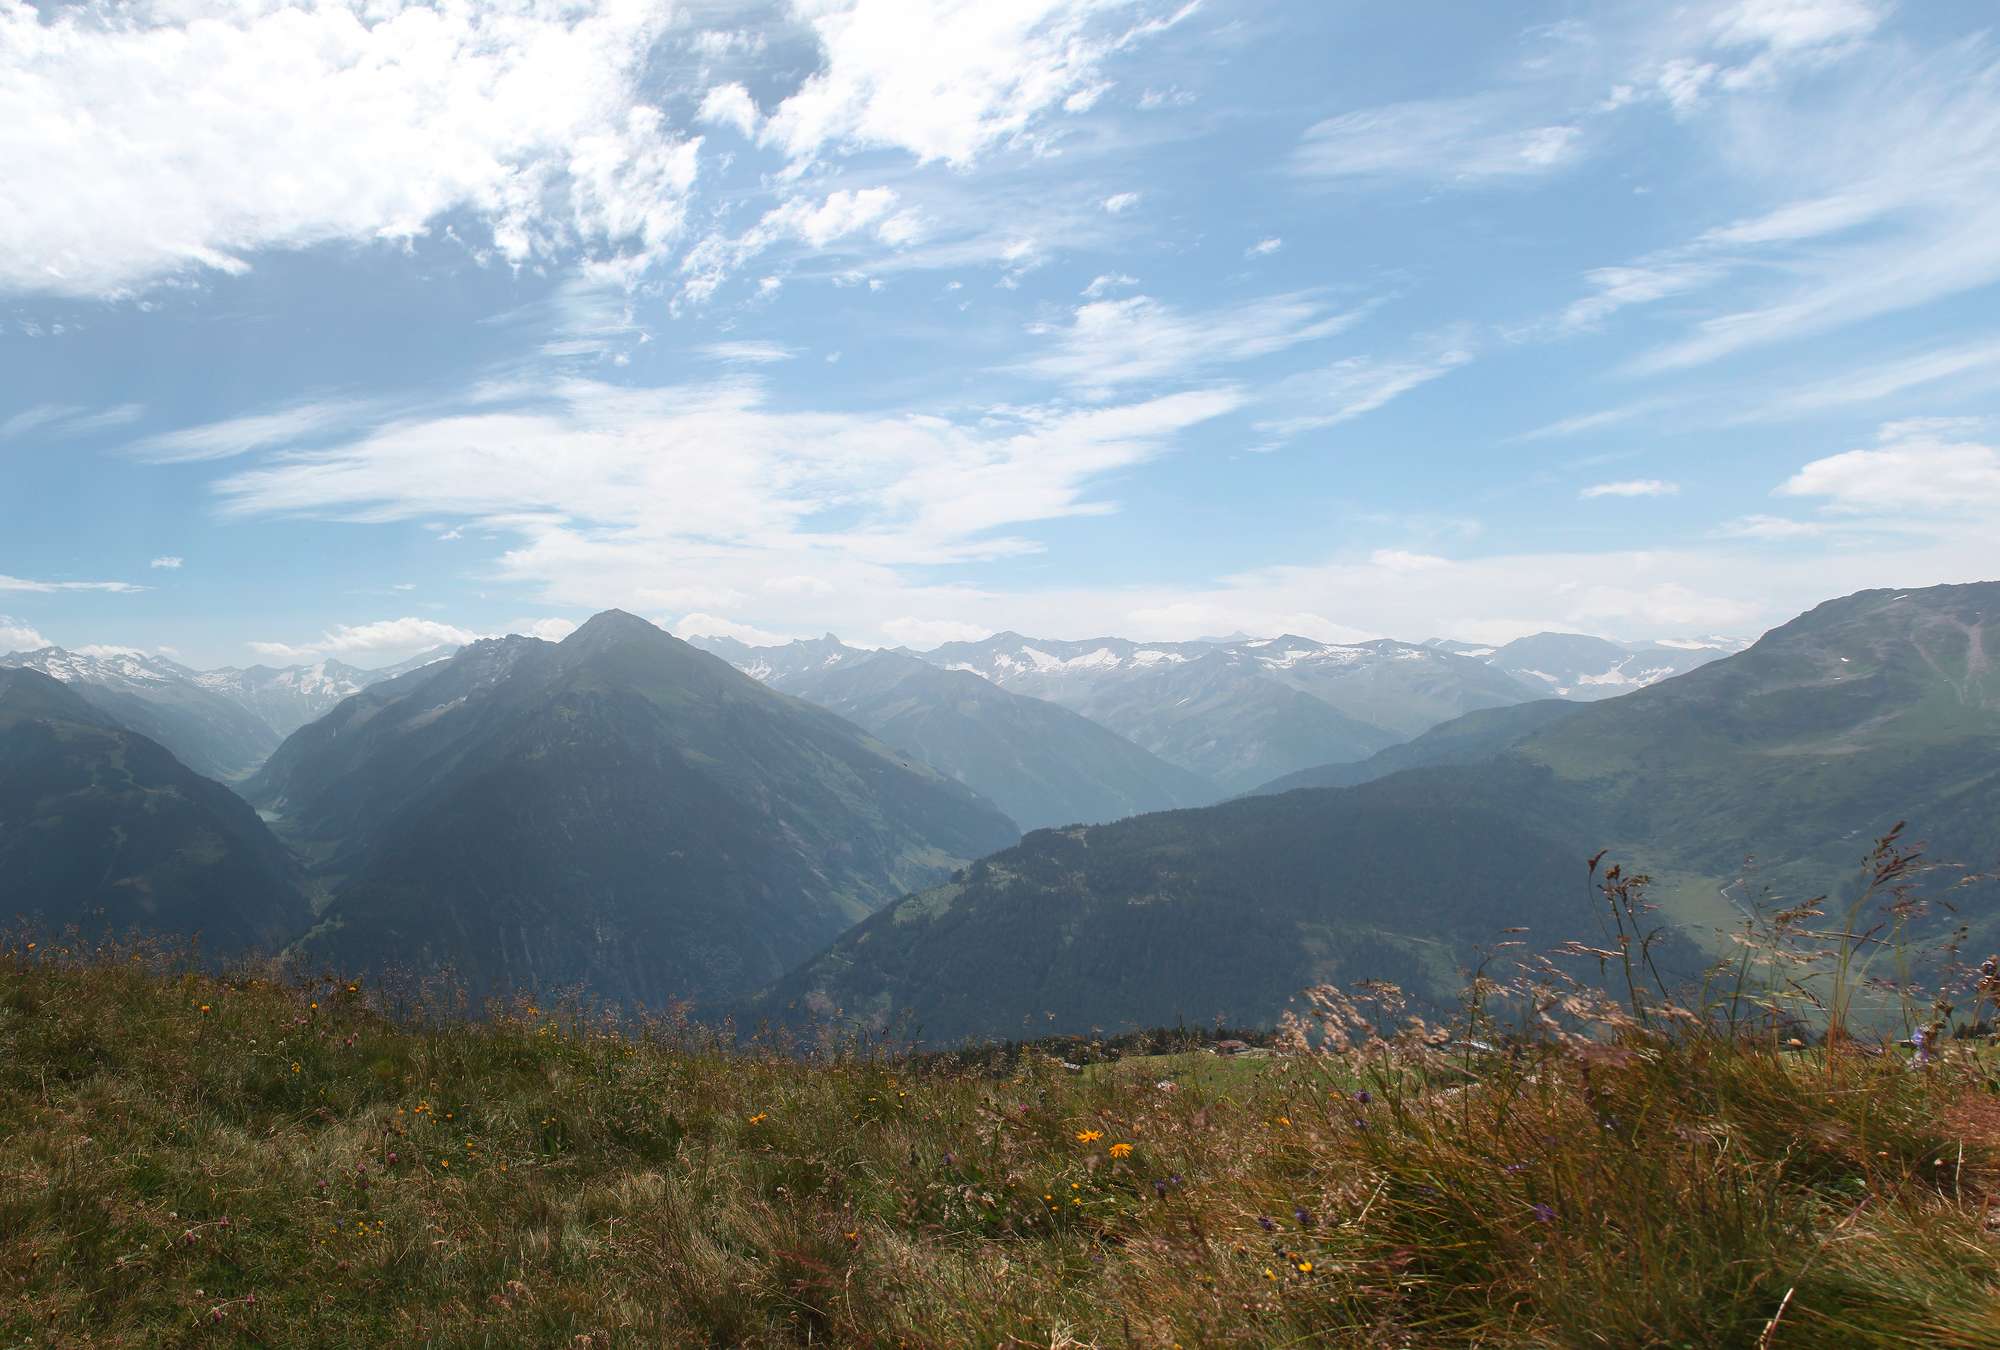             Fototapete Berge & Täler – Alpenblick
        